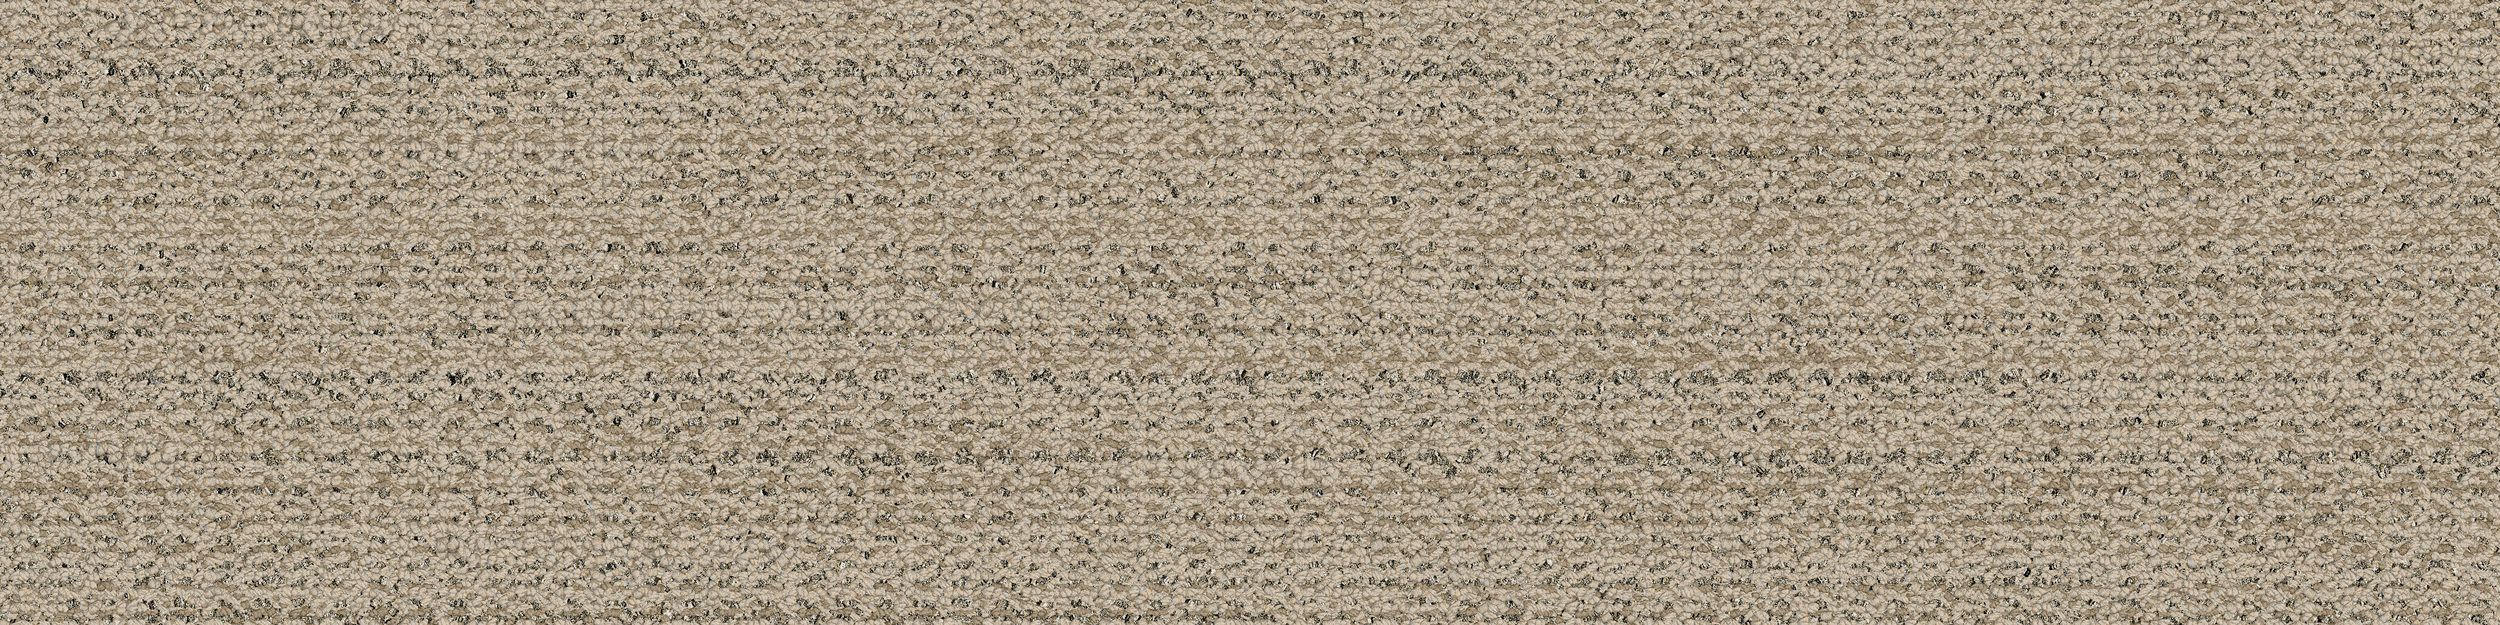 WW870 Carpet Tile In Raffia Weft image number 2